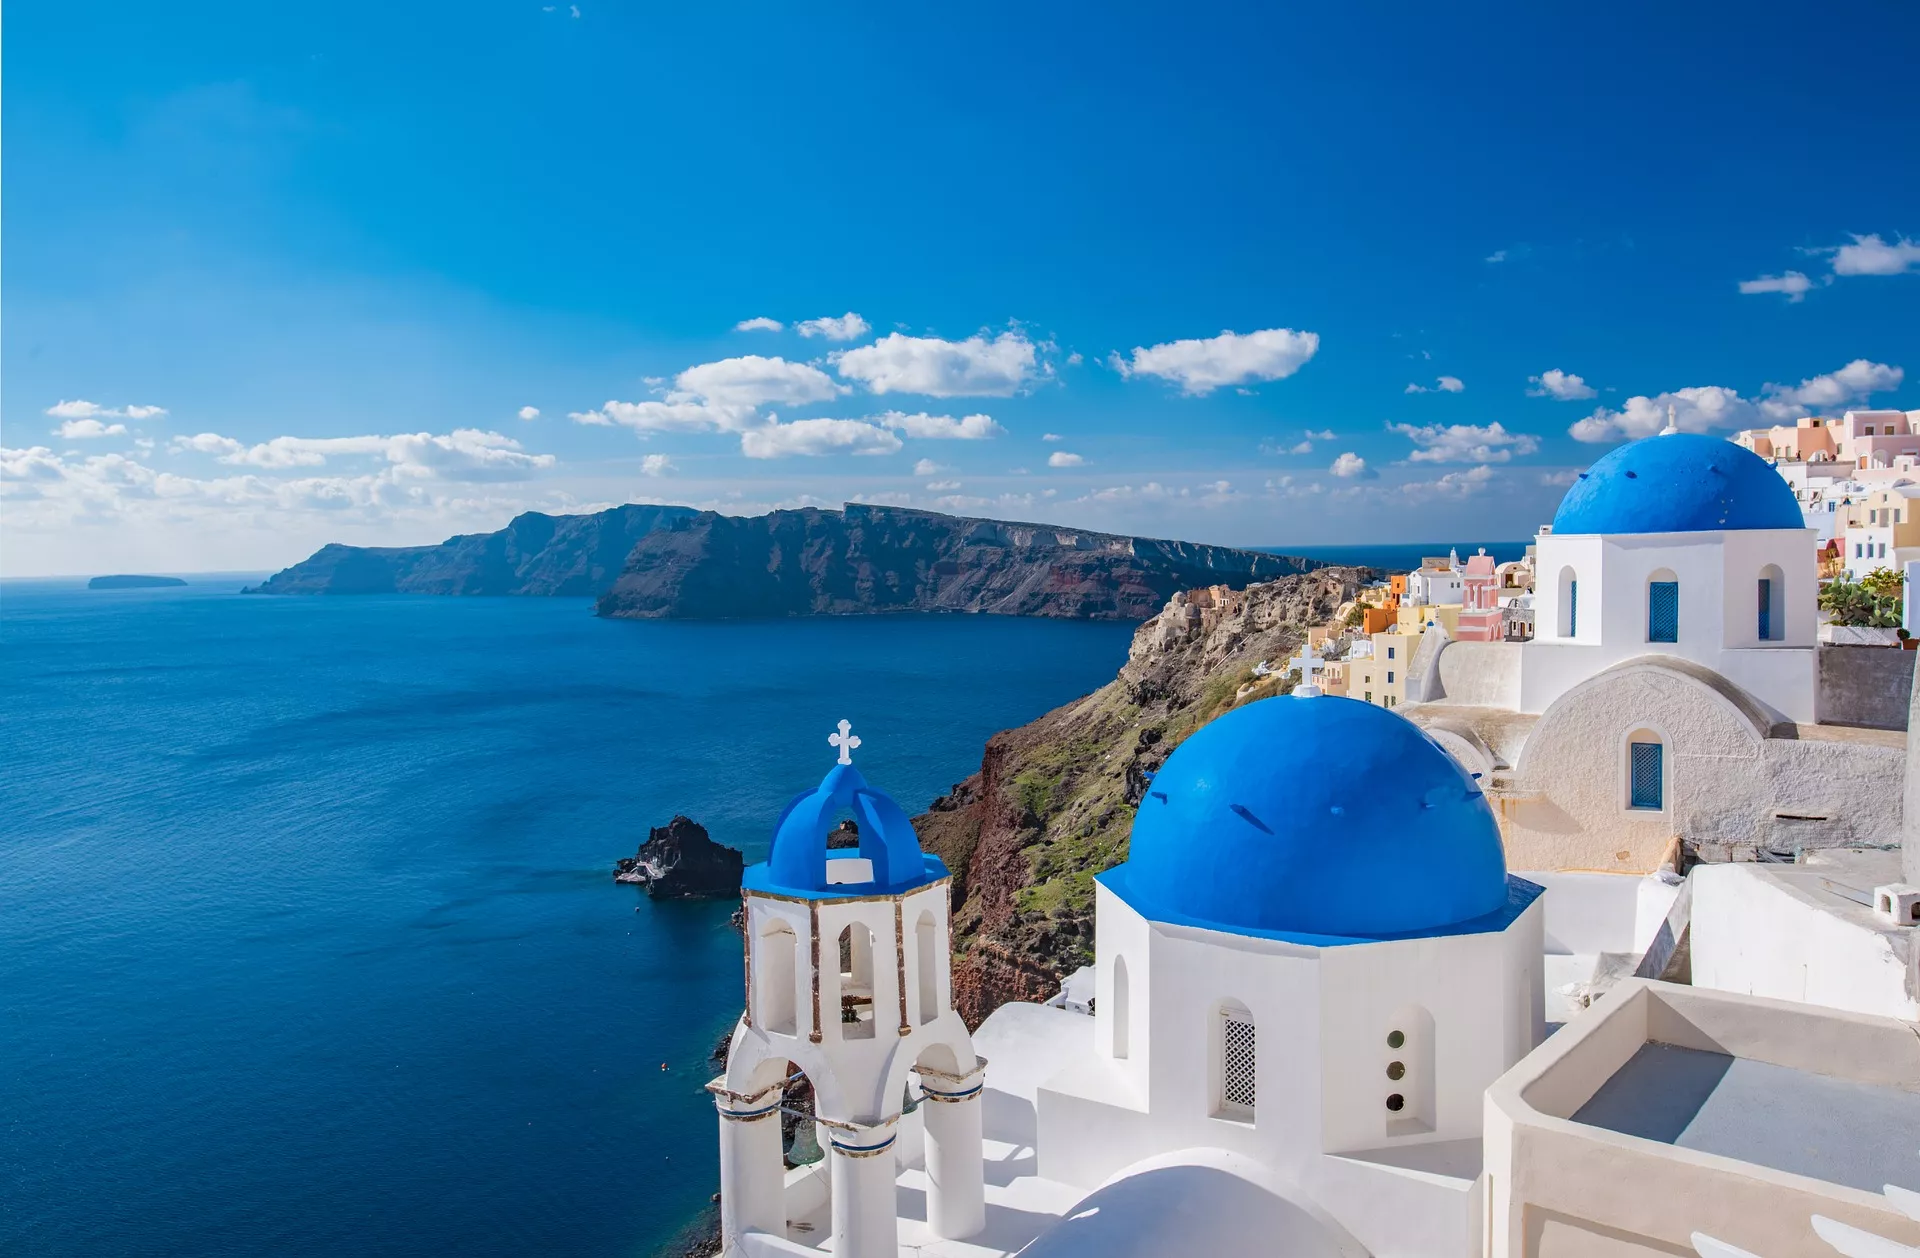 Main image of article: Un voyage unique en Grèce.